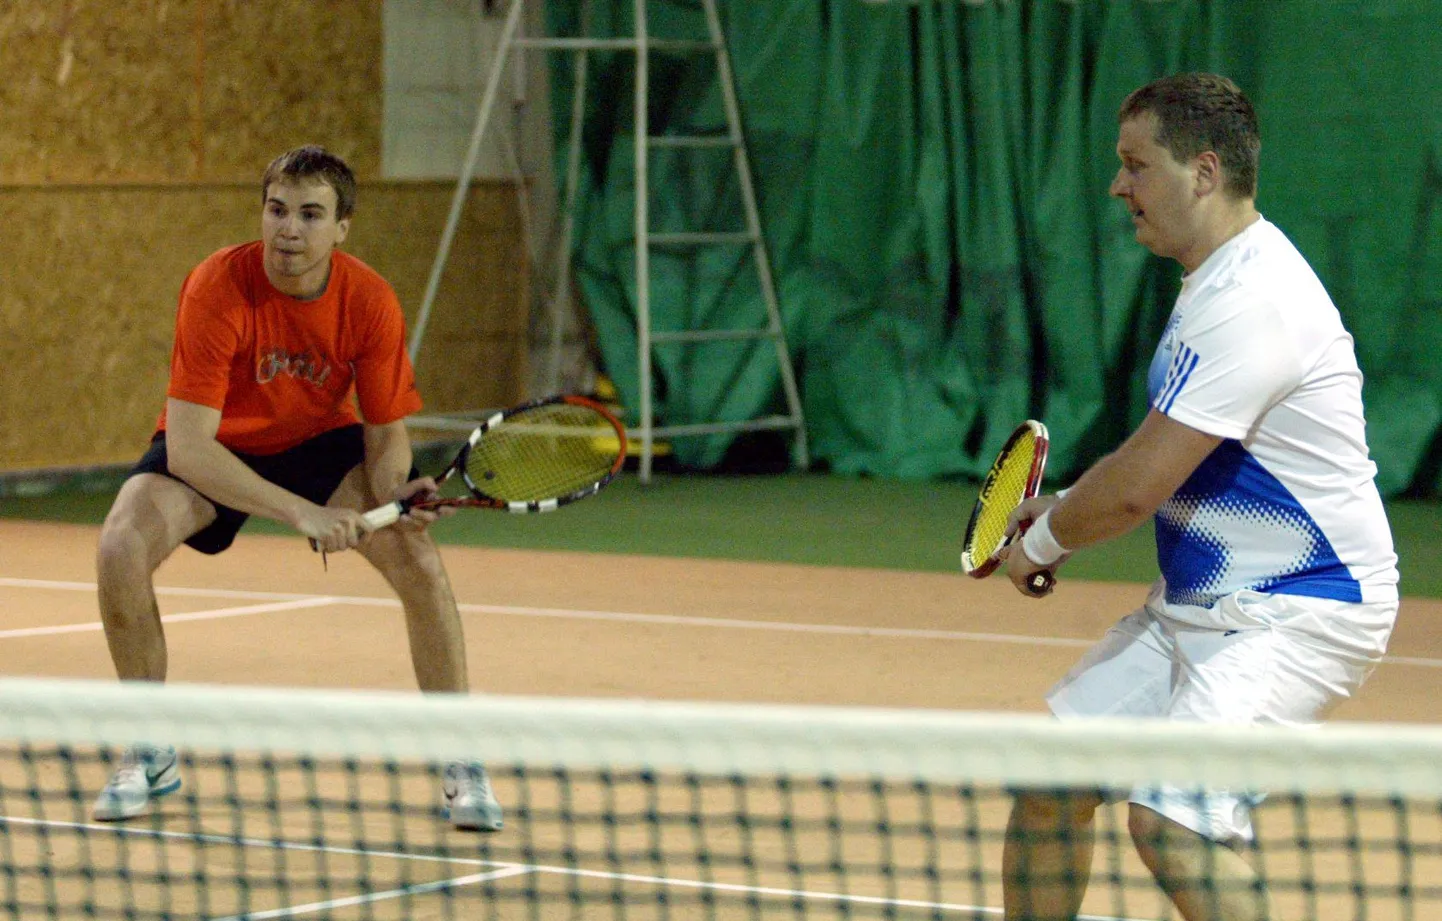 Meespaarismängus napsasid “Tennisetuur 2010” esikoha Sten Lume (vasakul) ja Indrek Krigul, kes alistasid skooriga 6:1, 6:4 duo Aare Kongi - Veiko  Vassiljev.